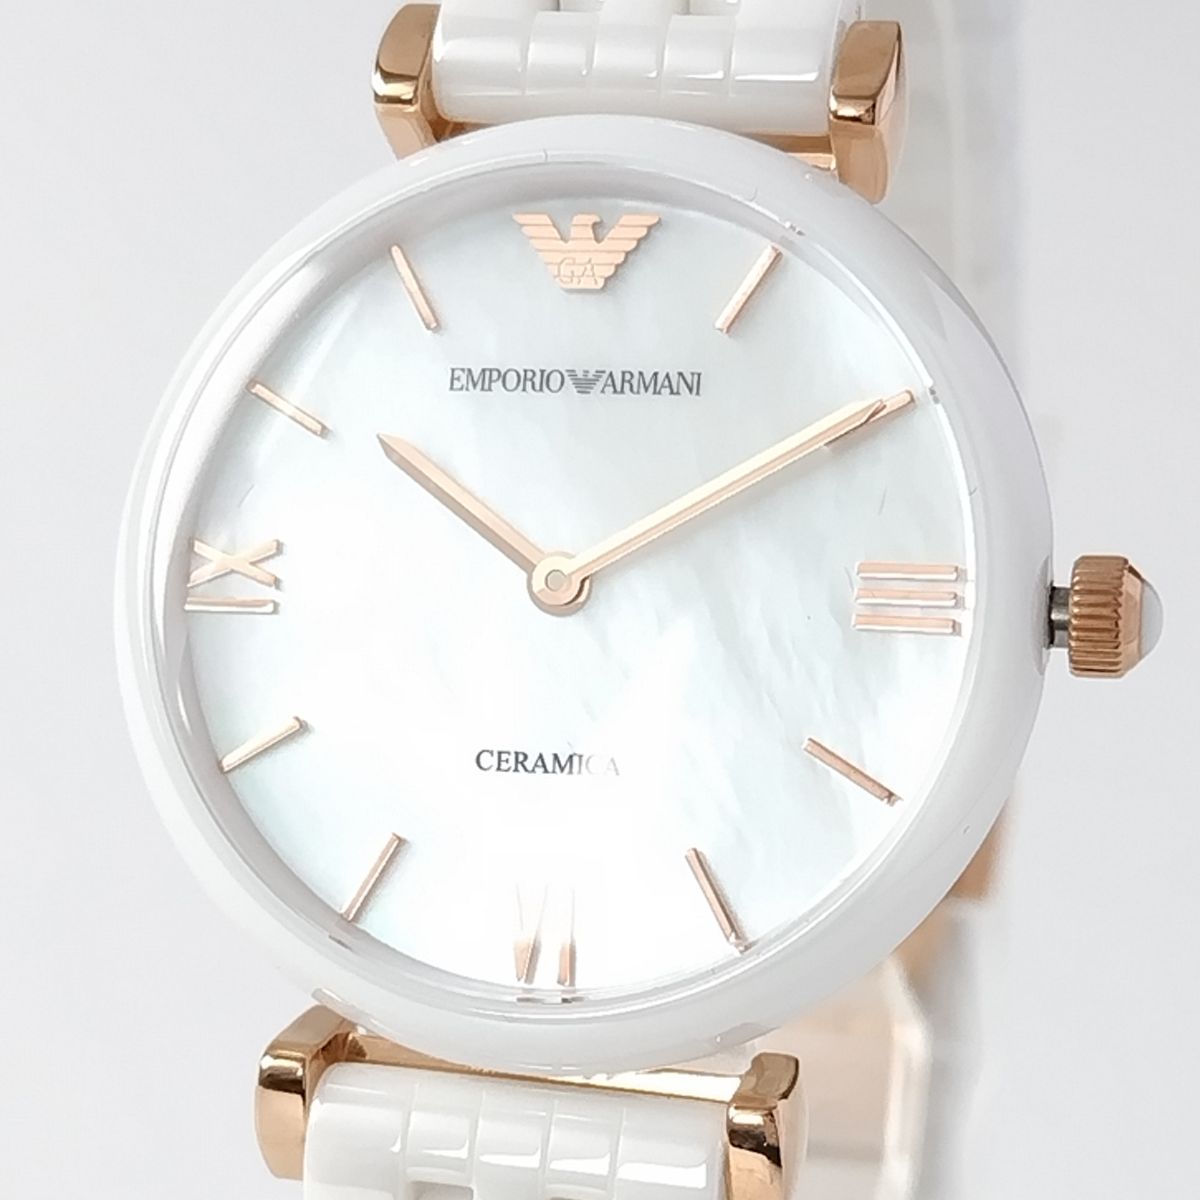 ホワイトセラミック新品レディース腕時計エンポリオ・アルマーニ30mm白